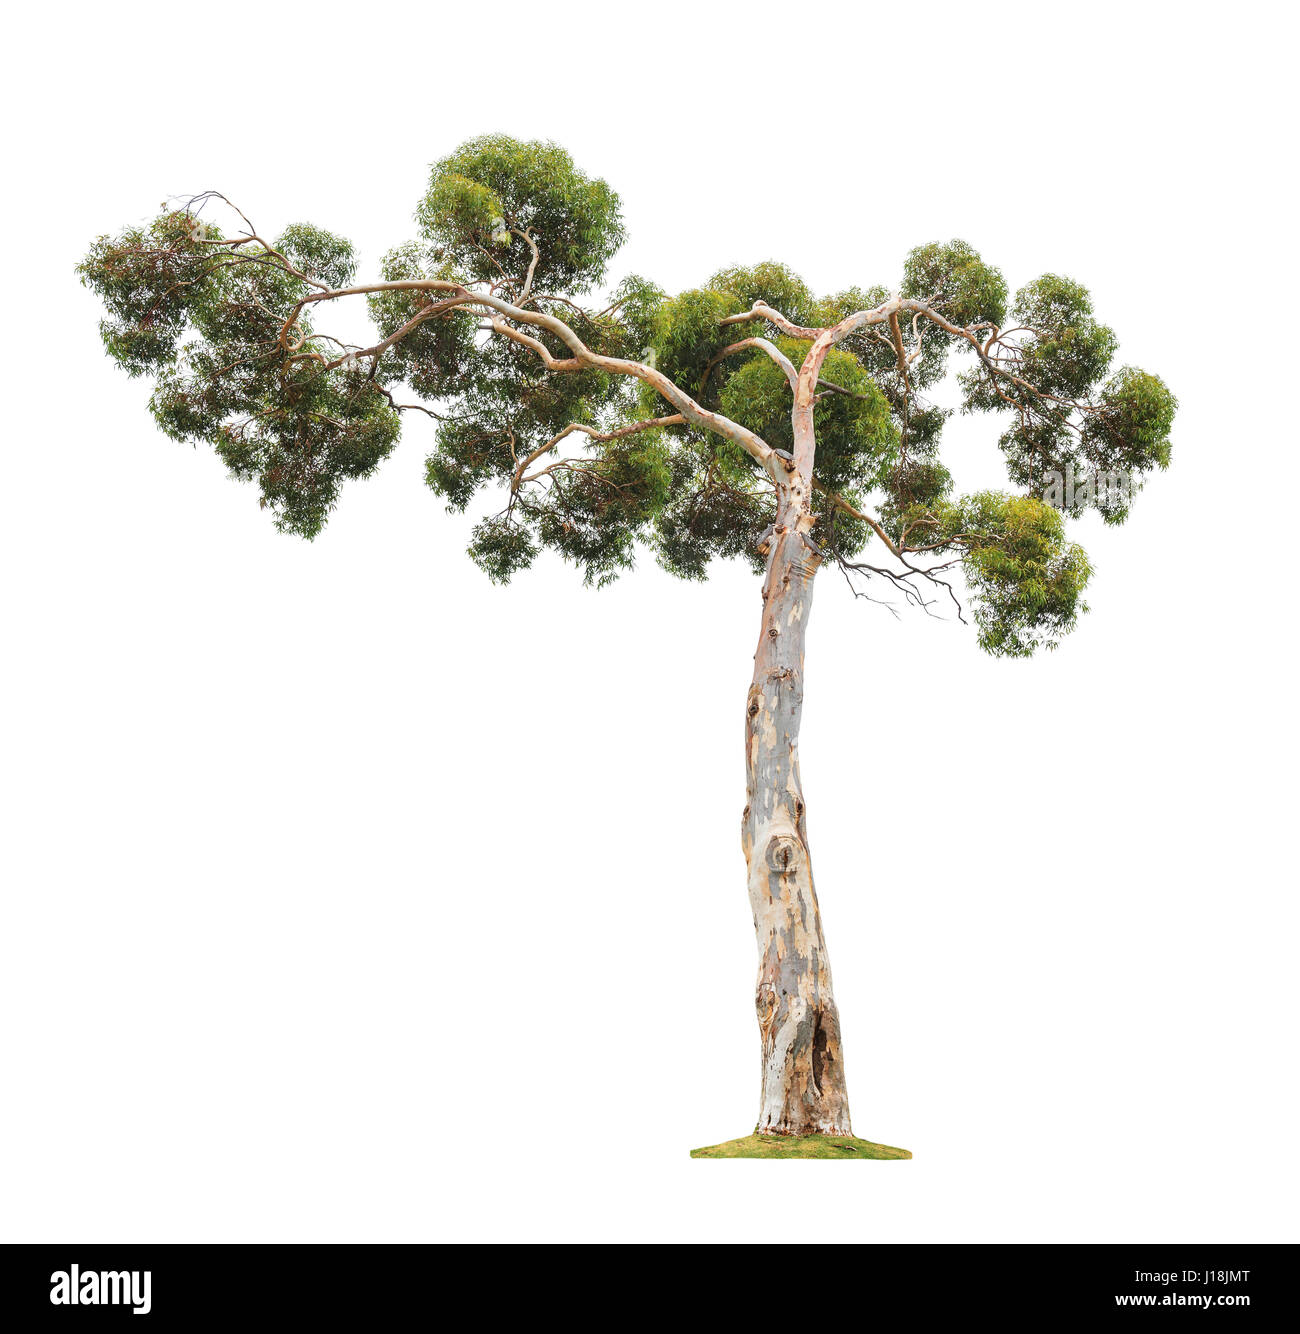 Beau vert ancien et grand arbre eucalyptus asymétrique avec couronne isolé sur fond blanc Banque D'Images